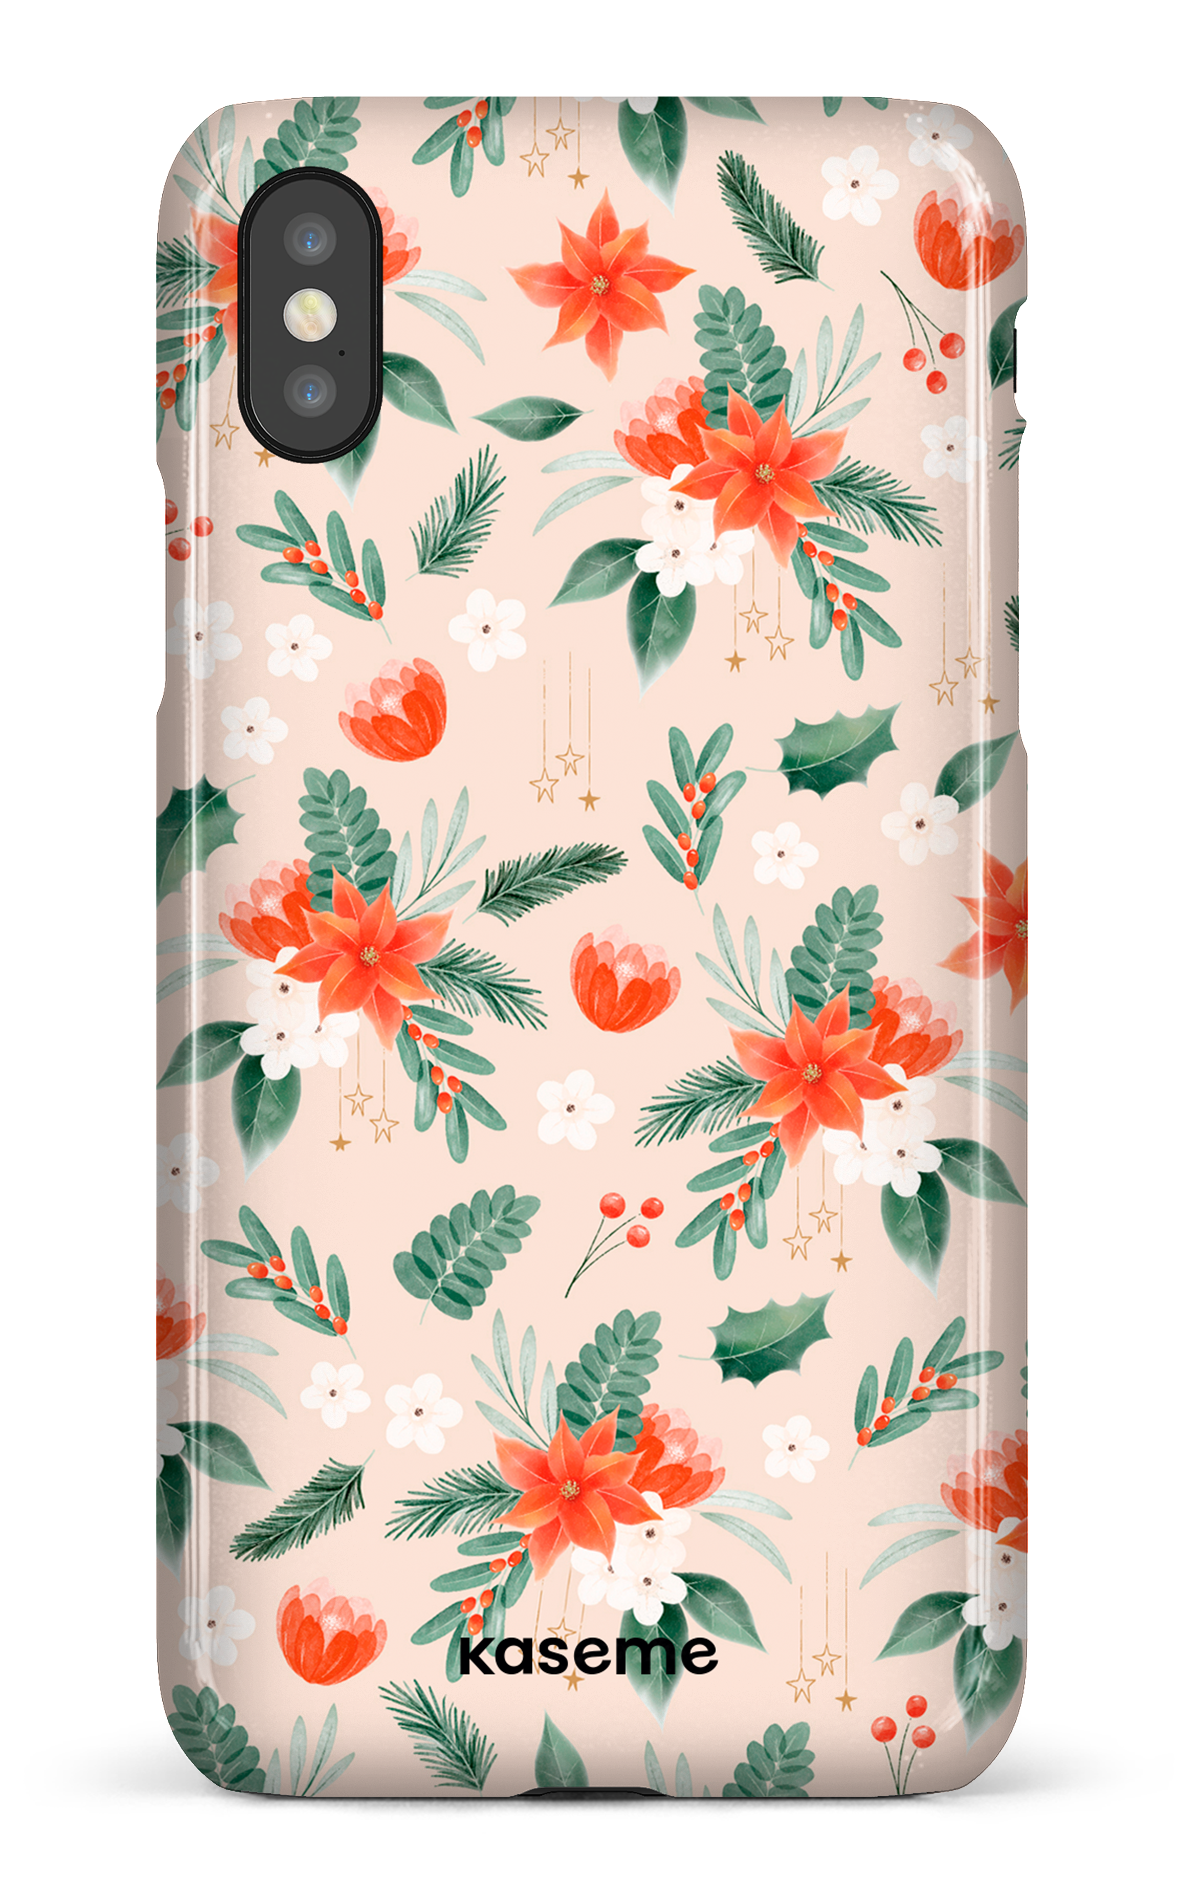 Poinsettia Beige - iPhone X/Xs